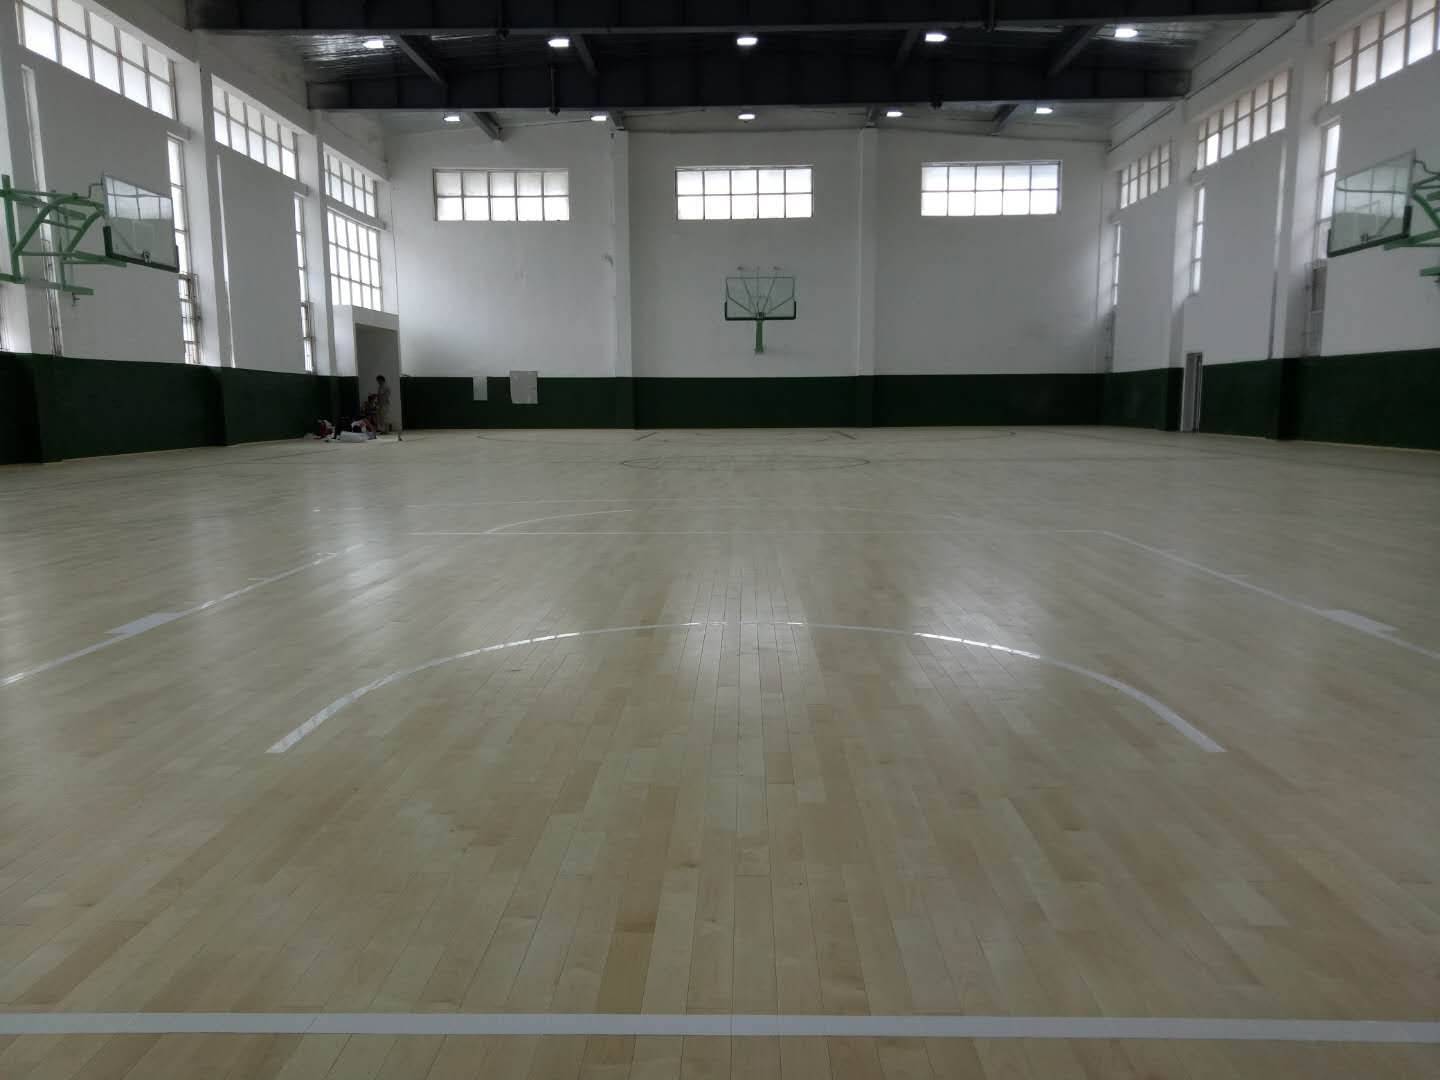 中体奥森运动木地板厂家运动木地板价格篮球体育馆运动木地板批发